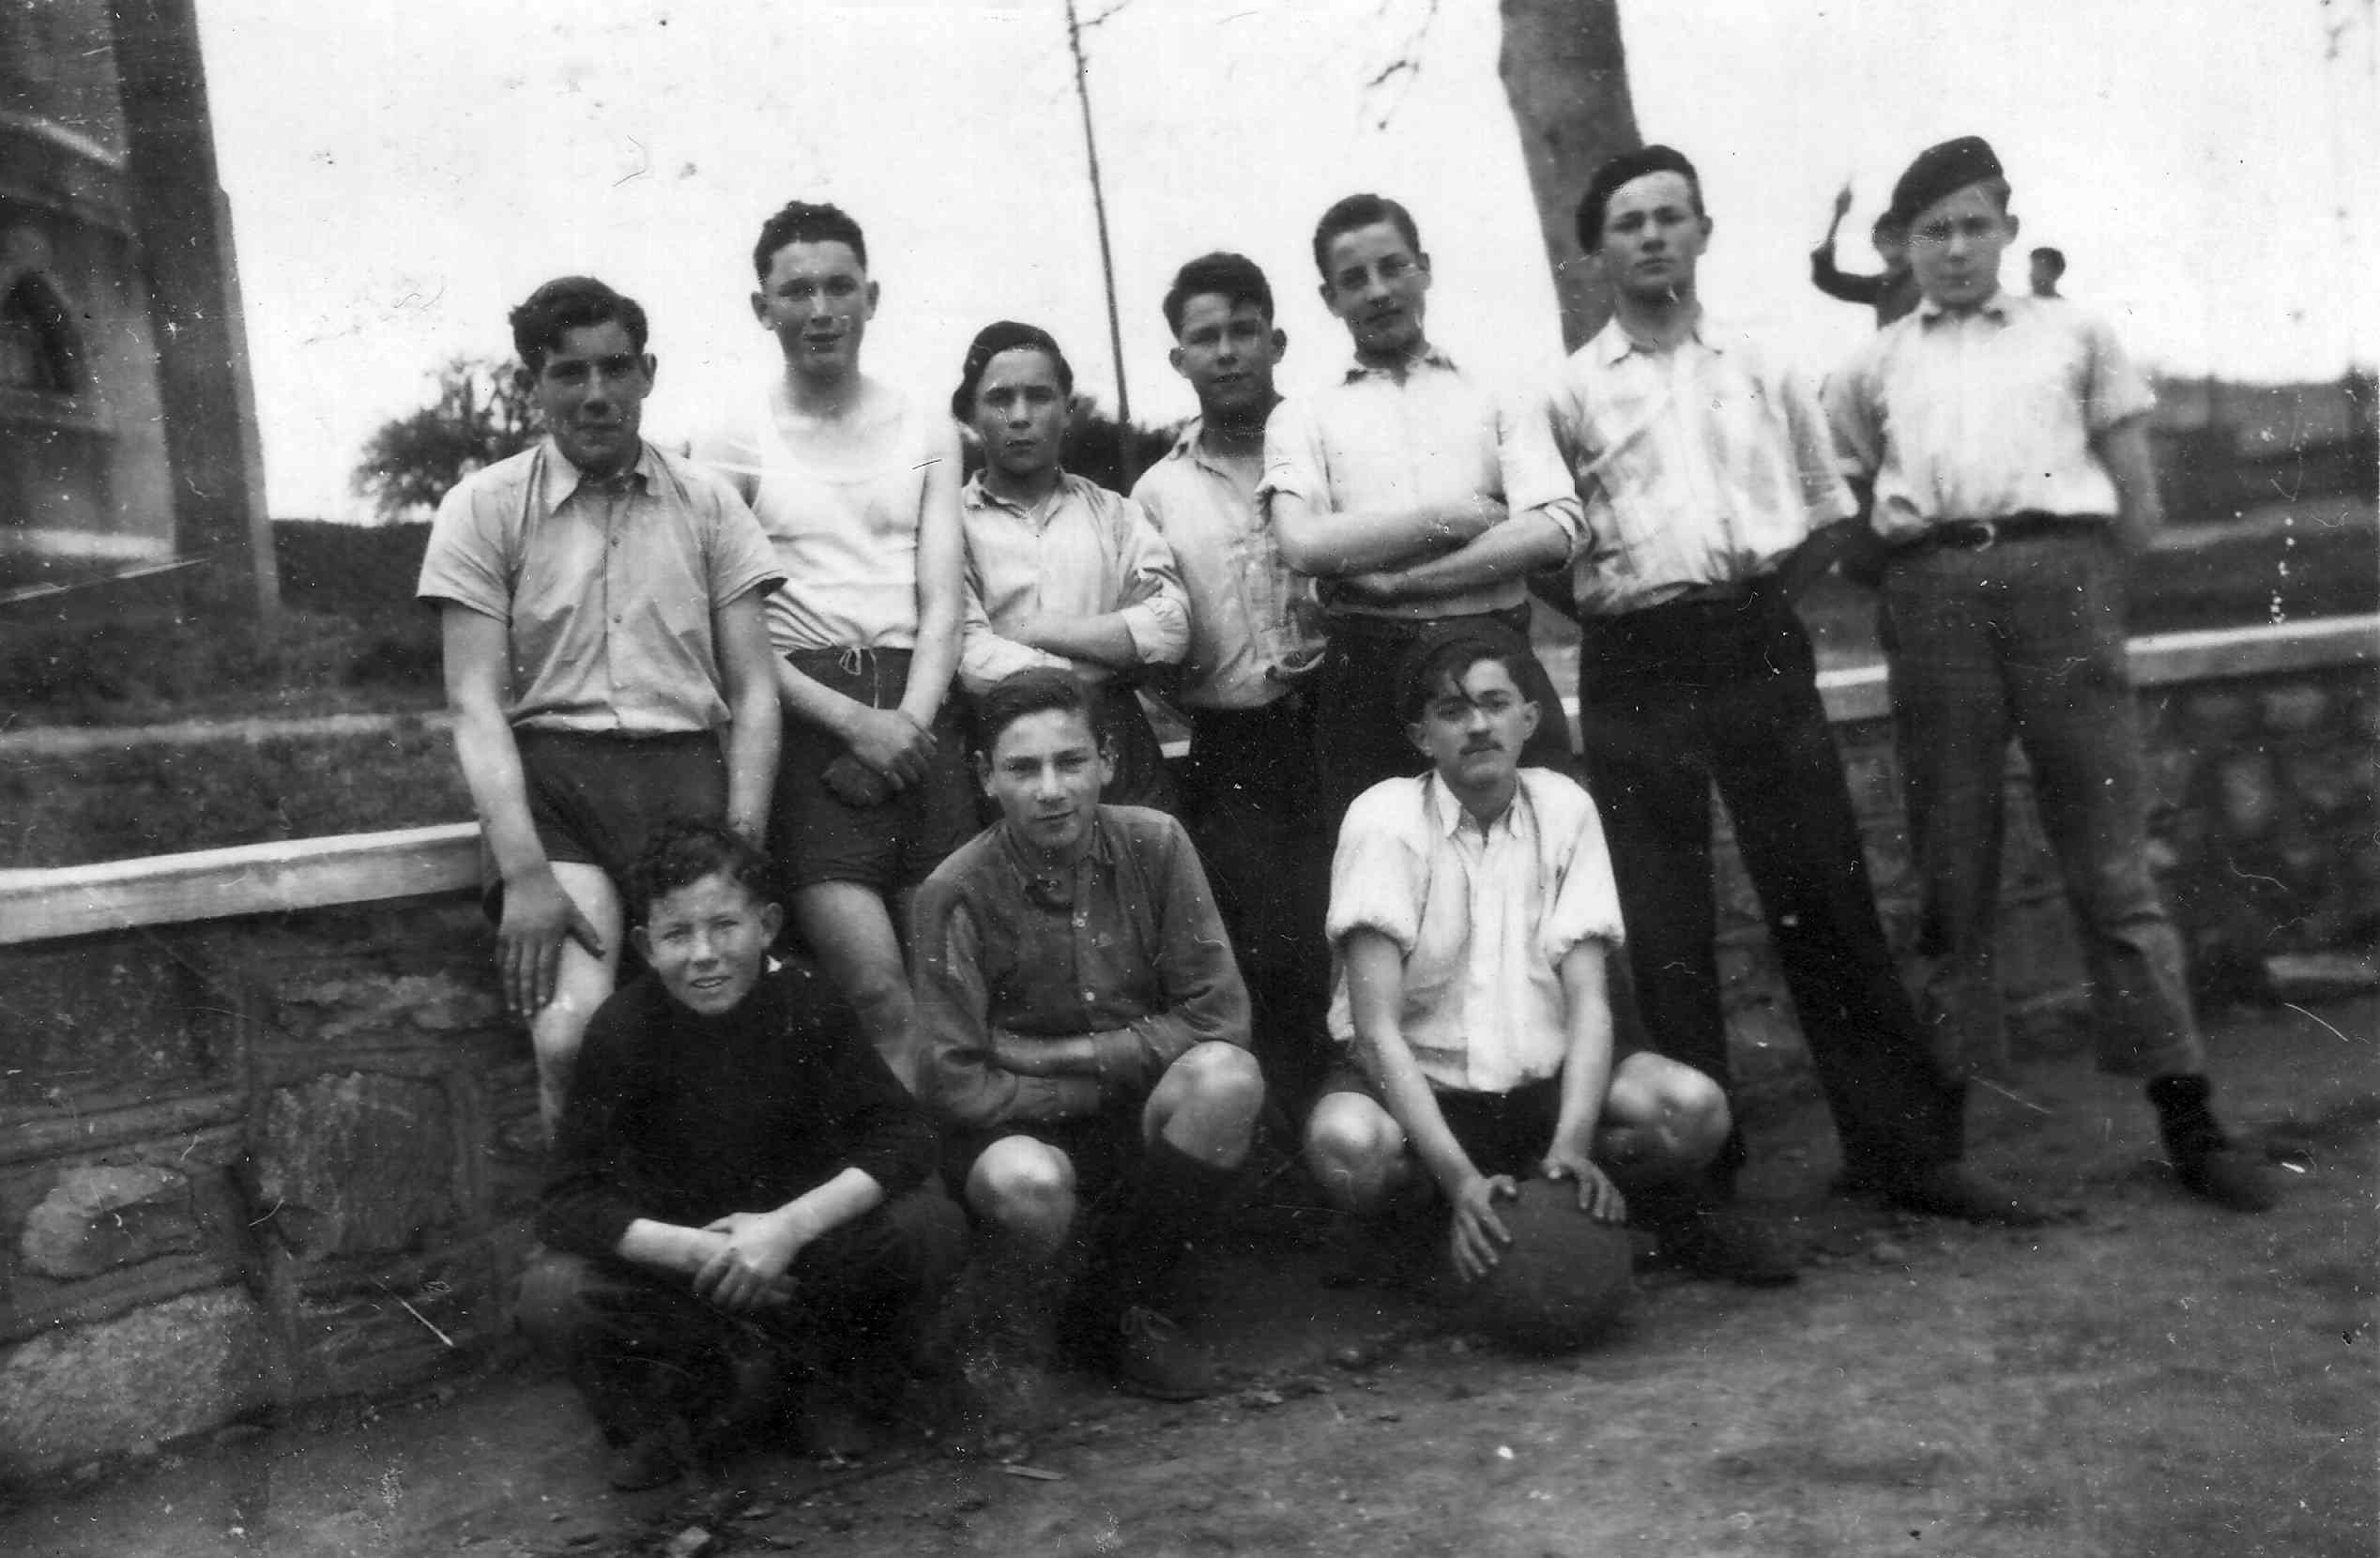 Une équipe de basket de 1947